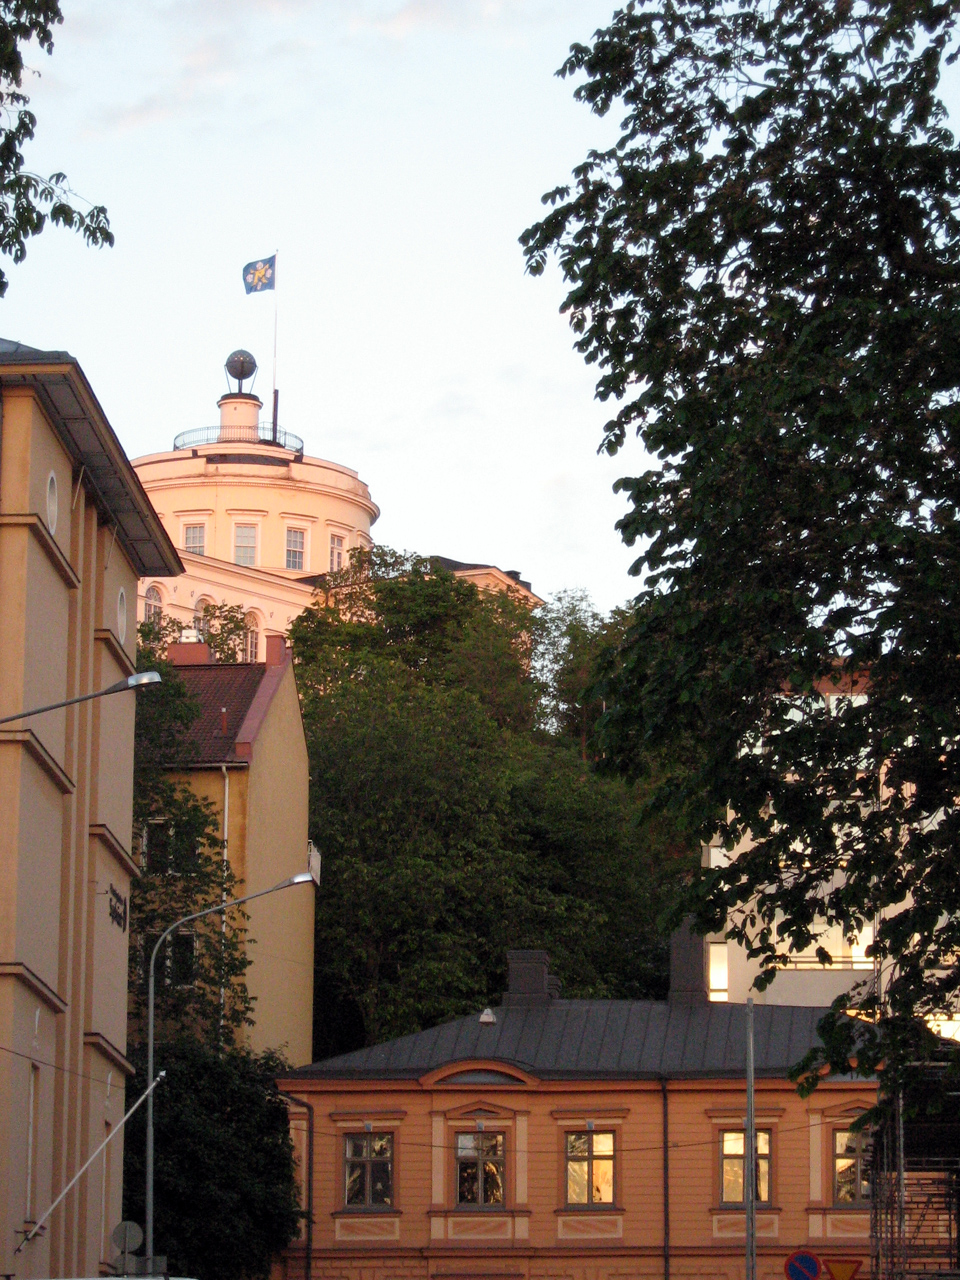 Vartiovuori Observatory Turku, Carl Ludvig Engel (